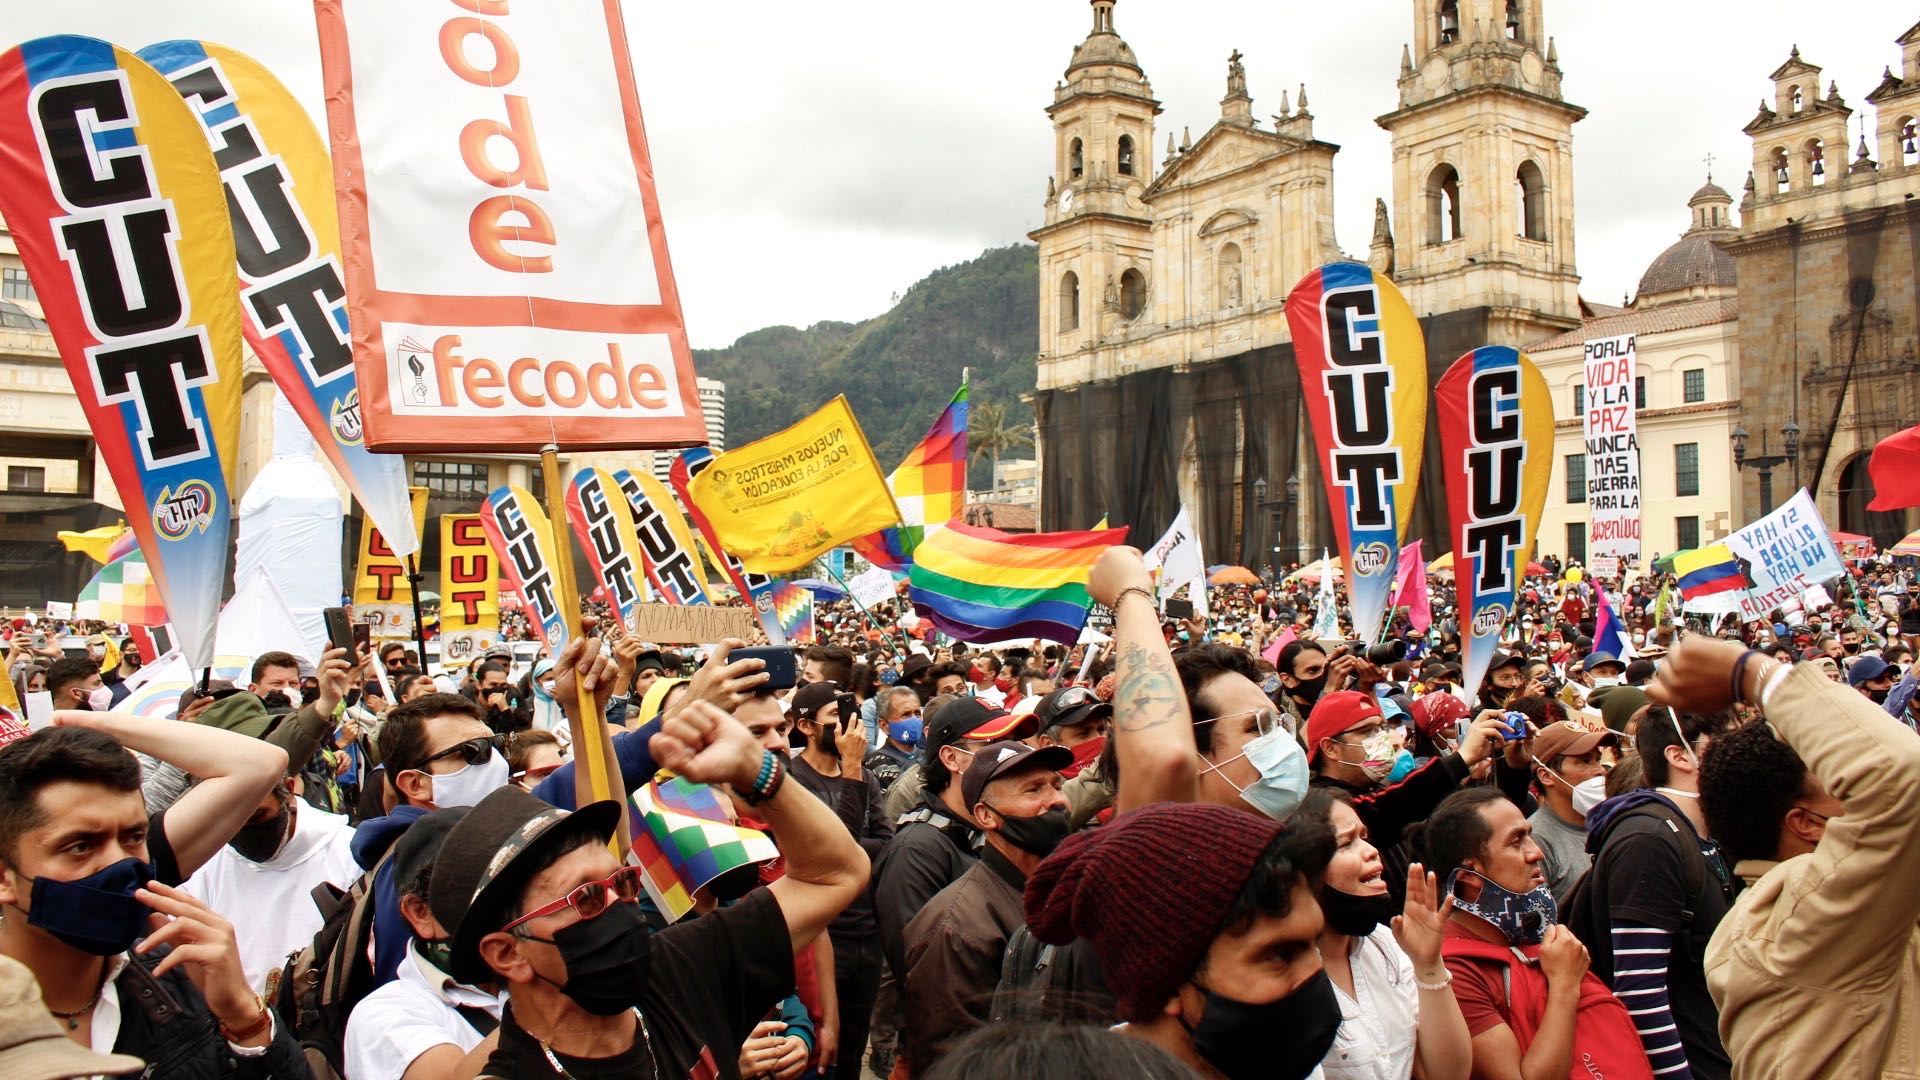 Profesores protestaron contra las políticas del Gobierno Nacional en el paro nacional del pasado 21 de octubre, convocado por Fecode. Foto: María José Cogollo/Infobae.